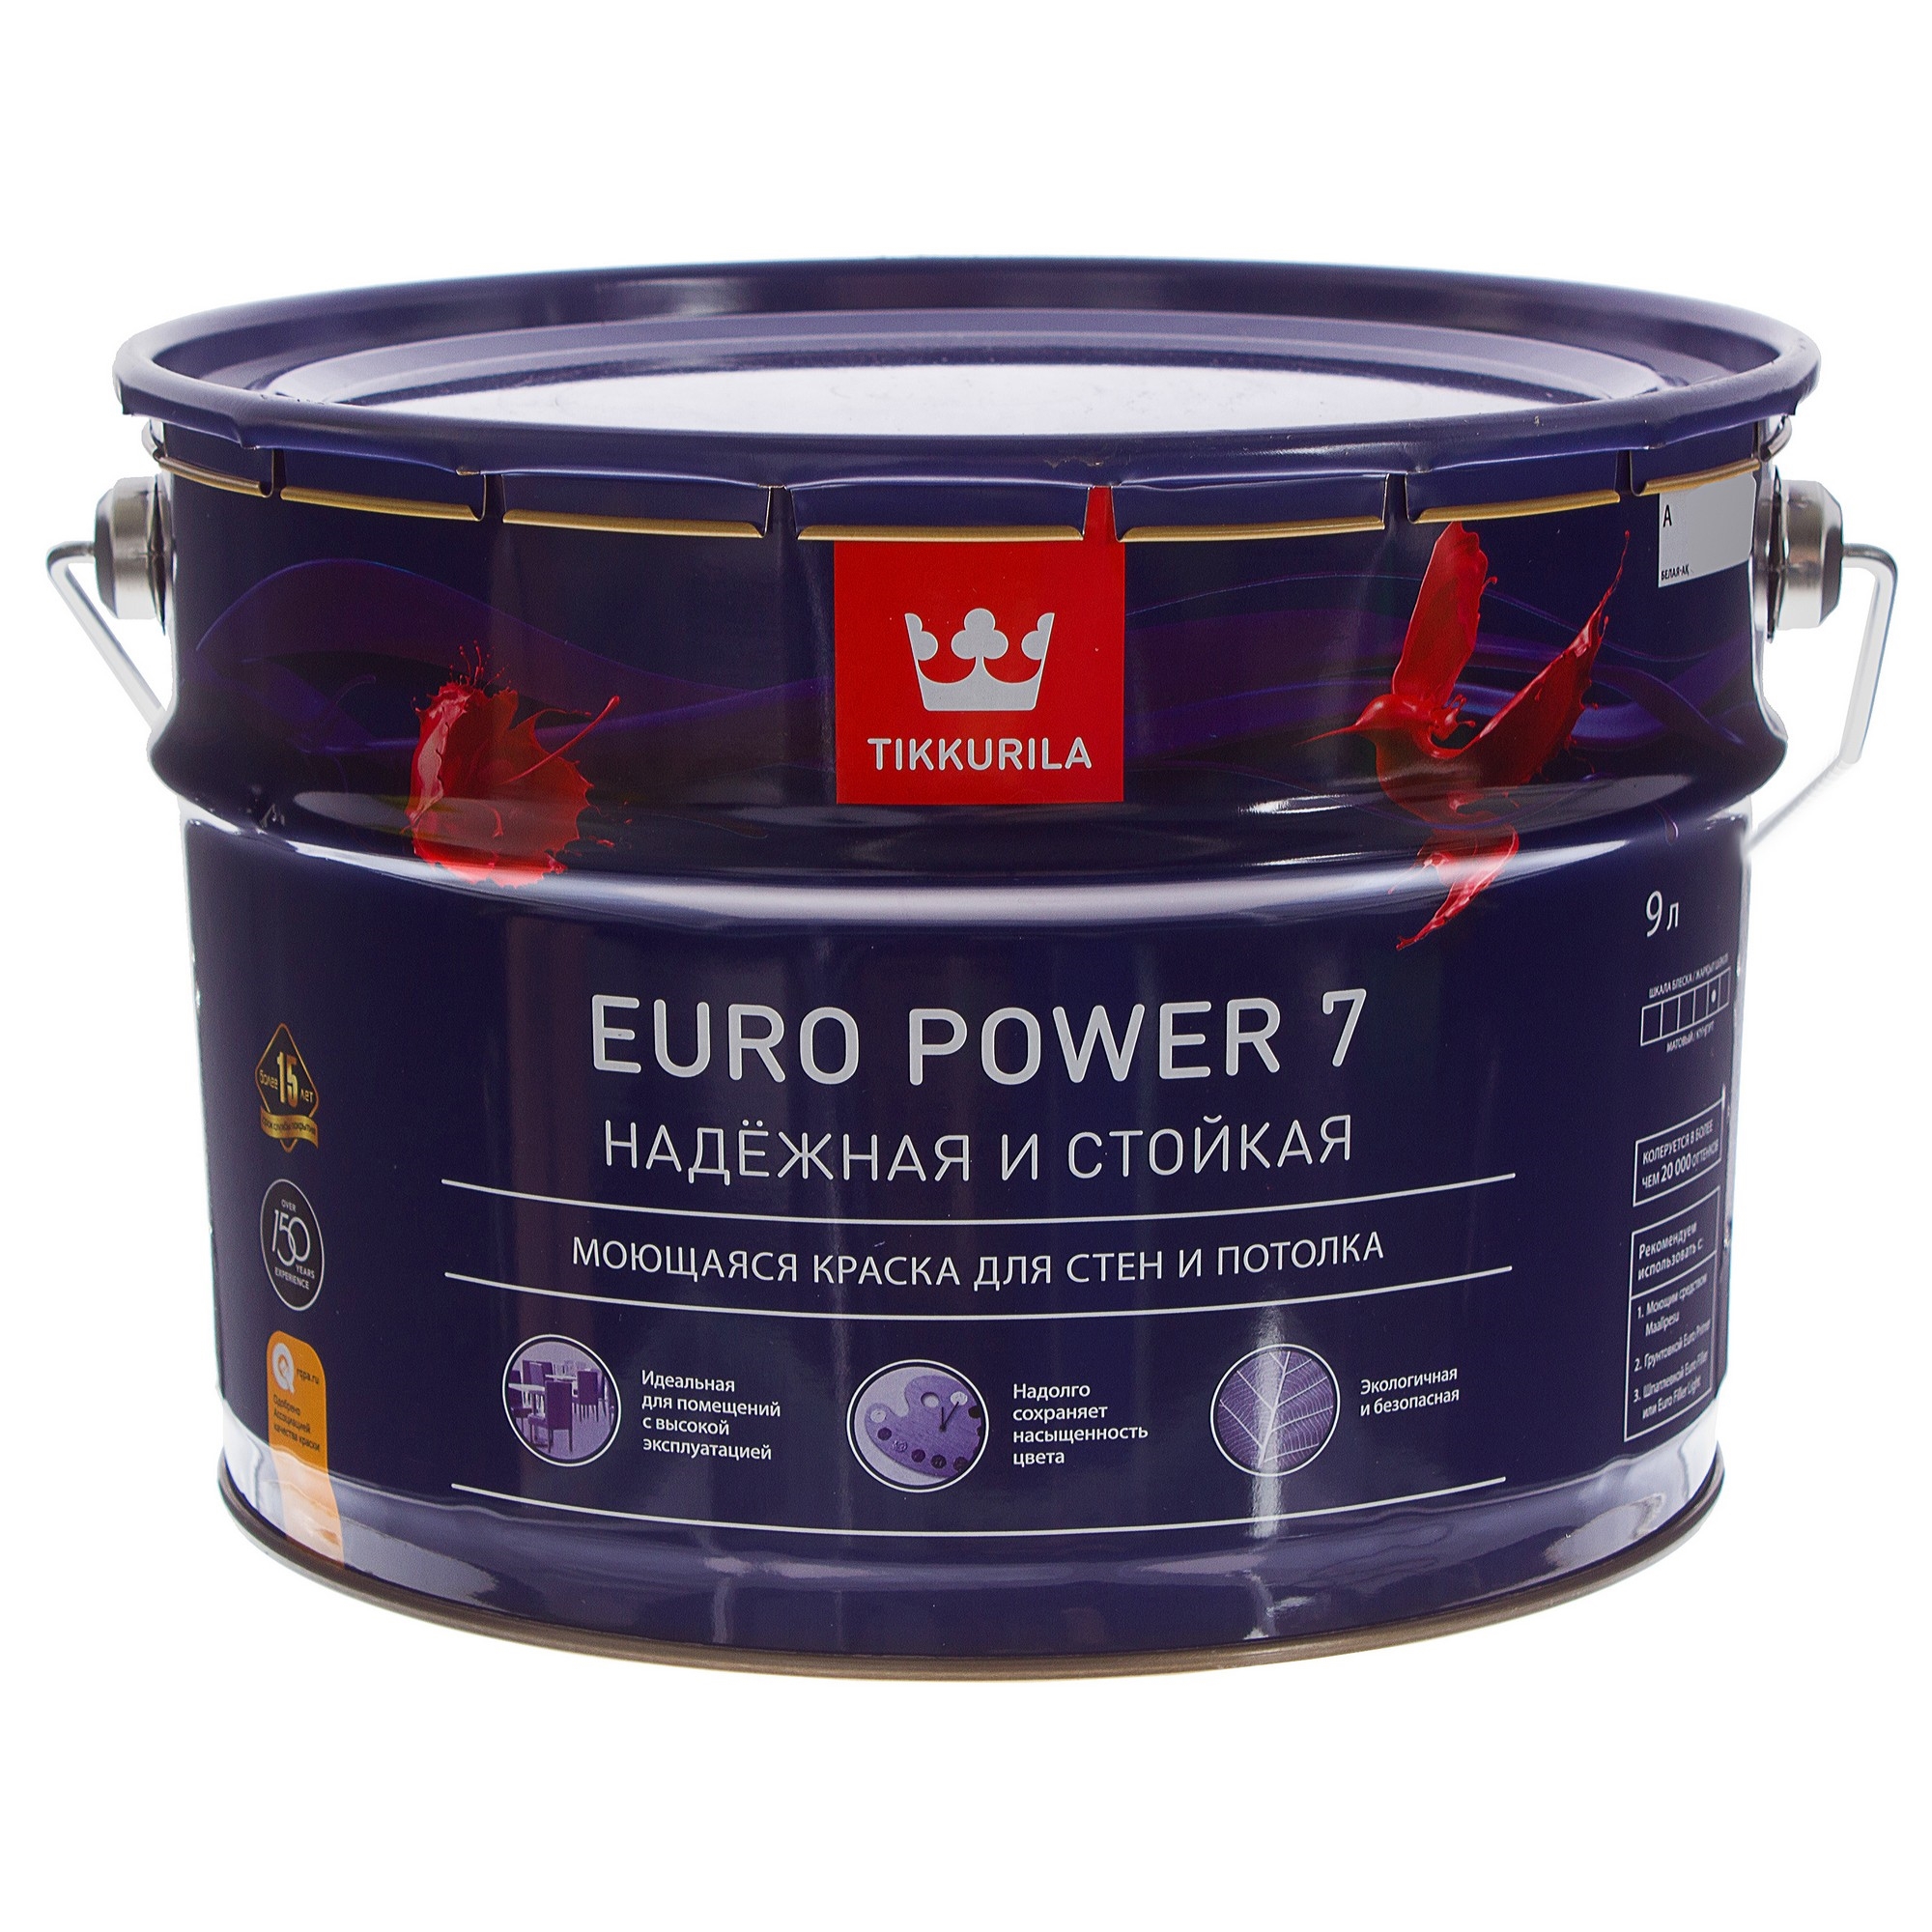  для стен и потолков Tikkurila Euro Power 7 цвет белый 9 л в .